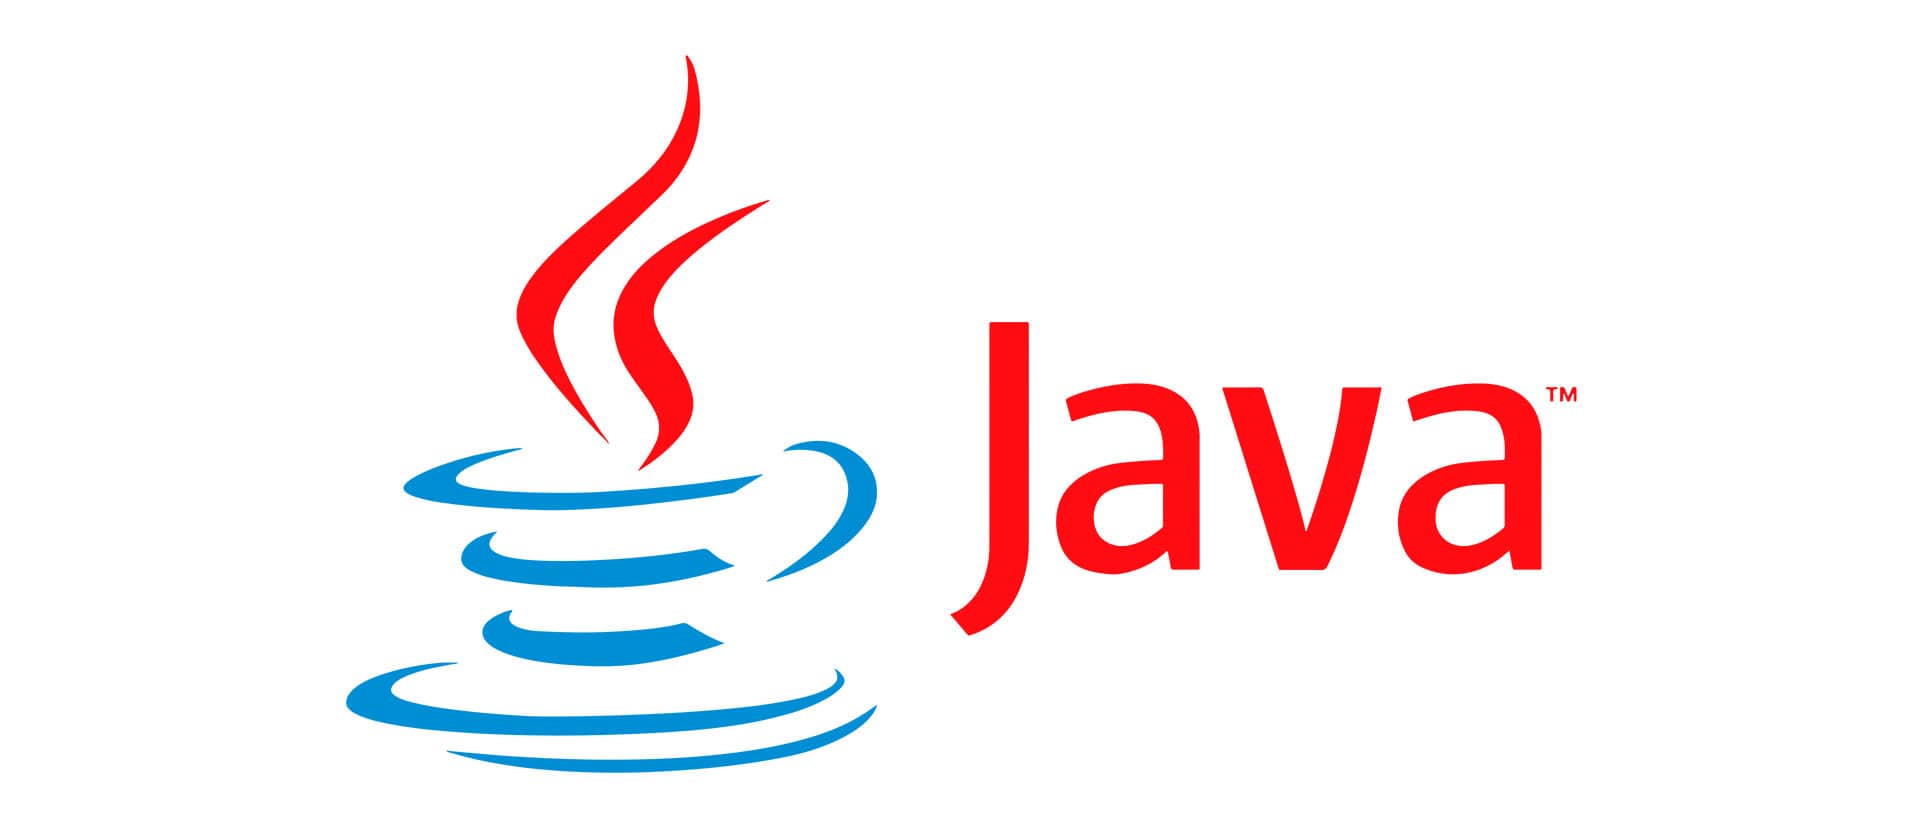 Java pid. Java язык программирования logo. Jvaязык программирования логотип. Джава язык программирования логотип. Жавалоготип язык программирования.